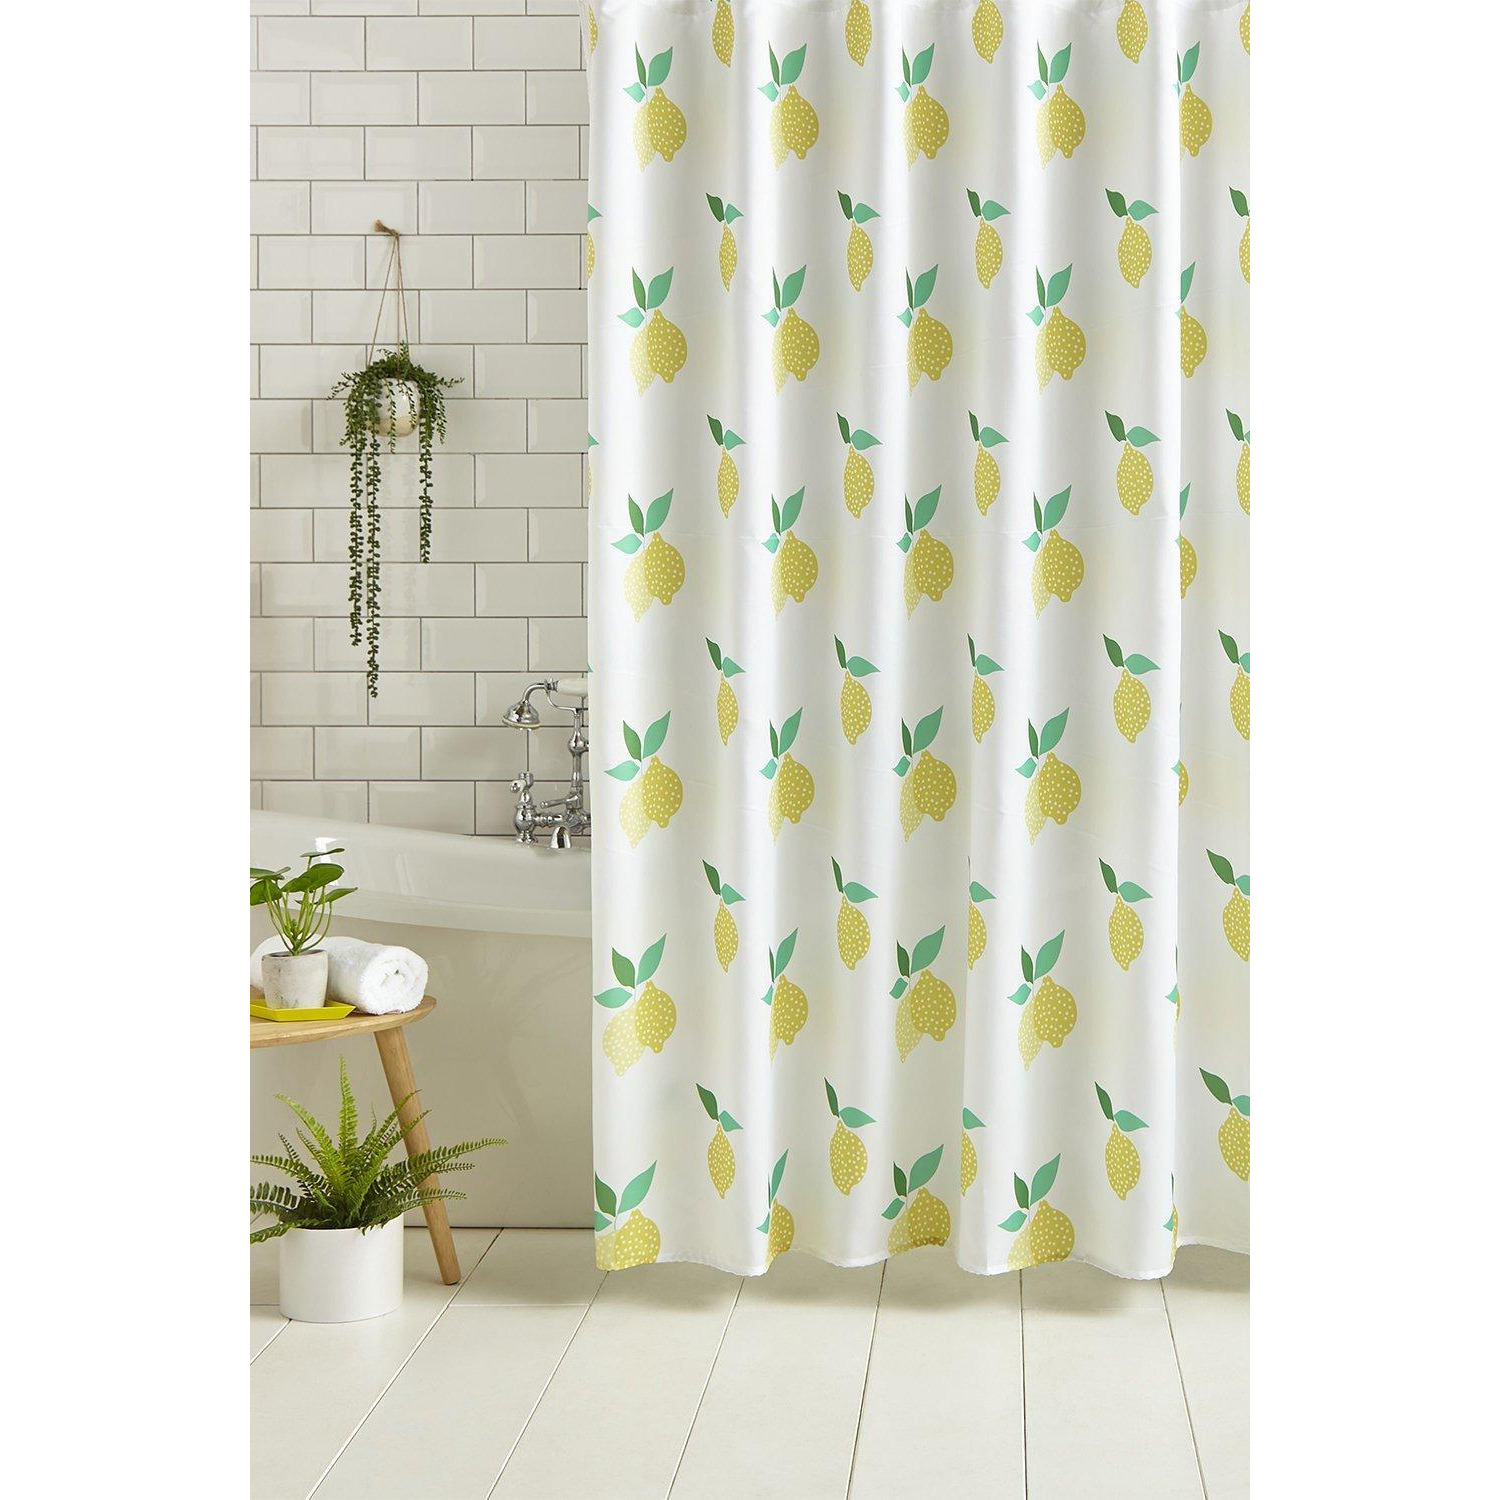 'Lemon Zest' Shower Curtain - image 1